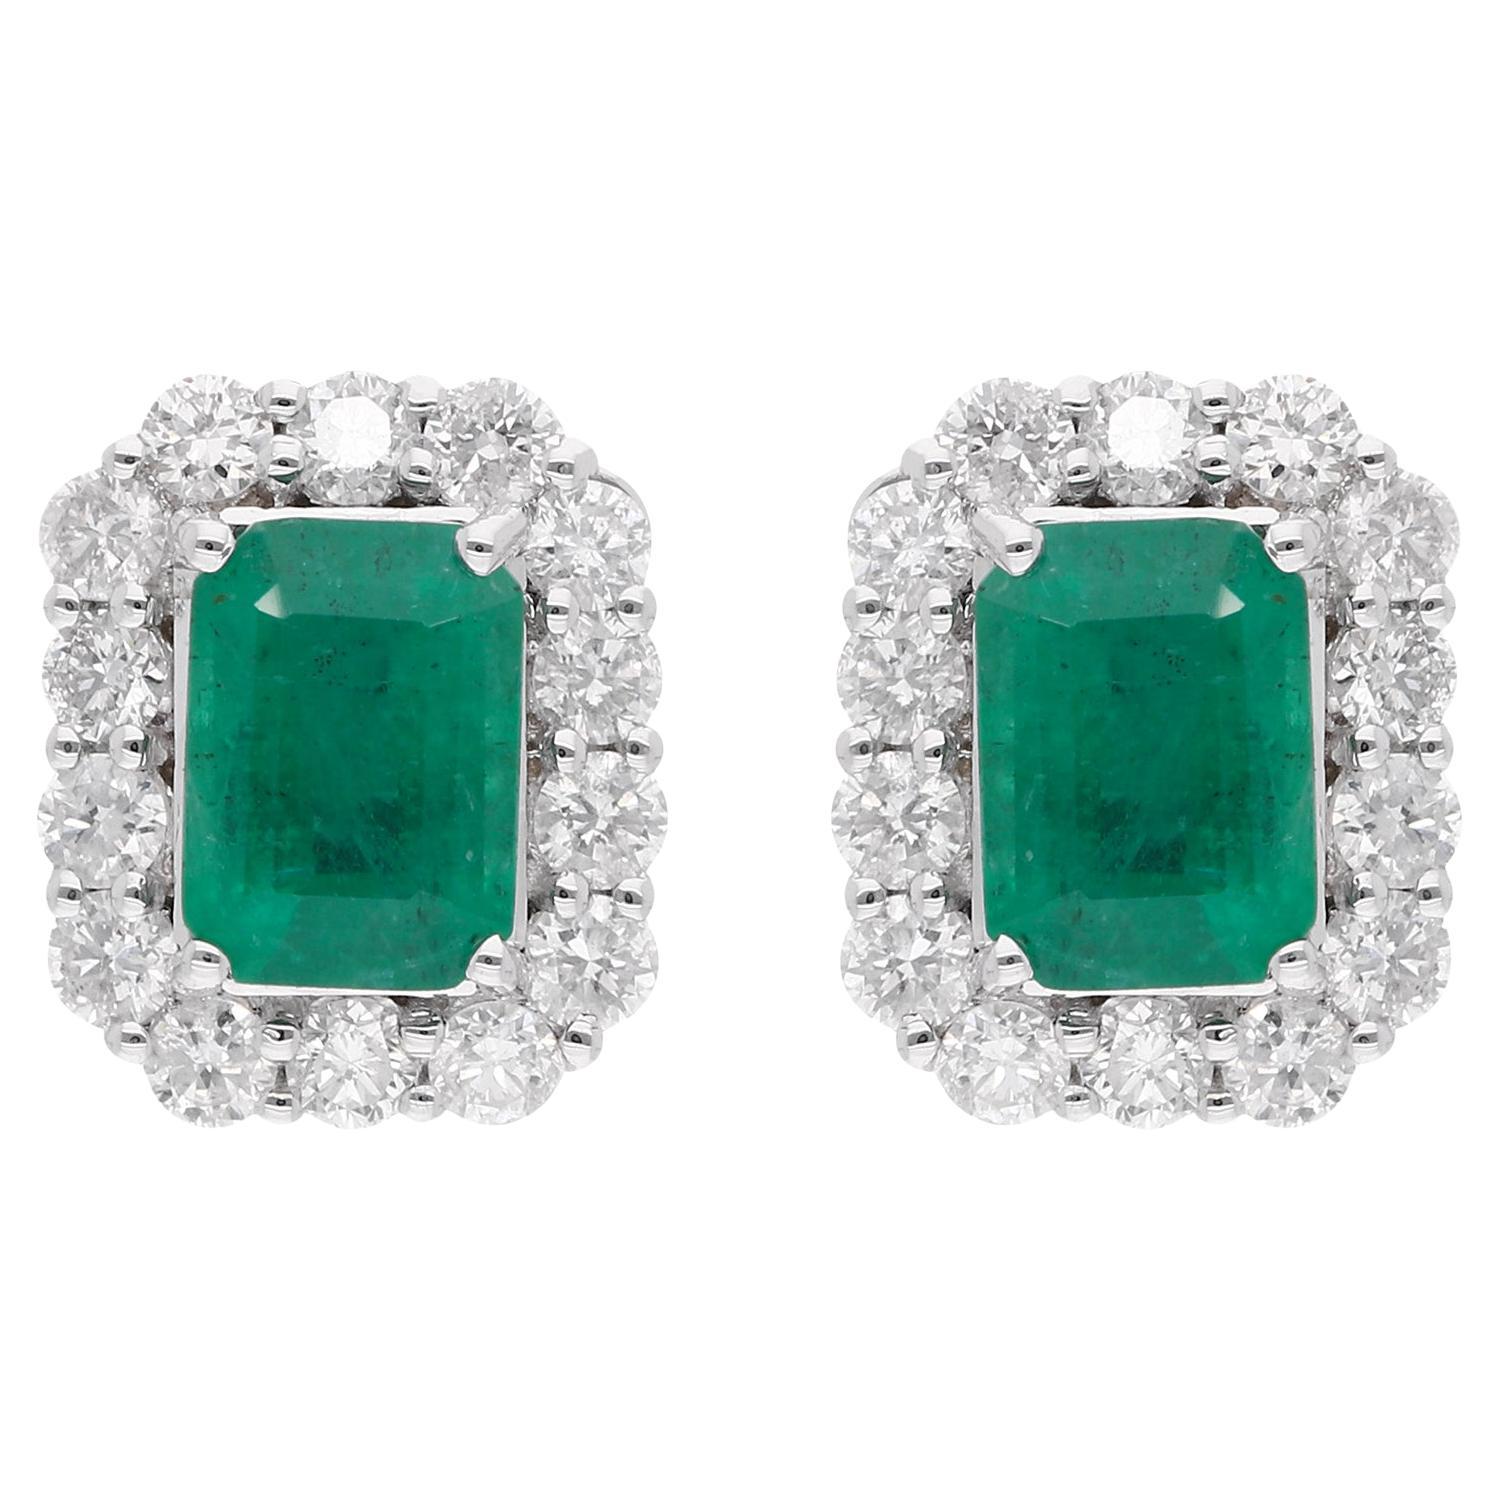 Zambian Emerald Gemstone Stud Earrings Diamond Pave 14 Karat White Gold Jewelry